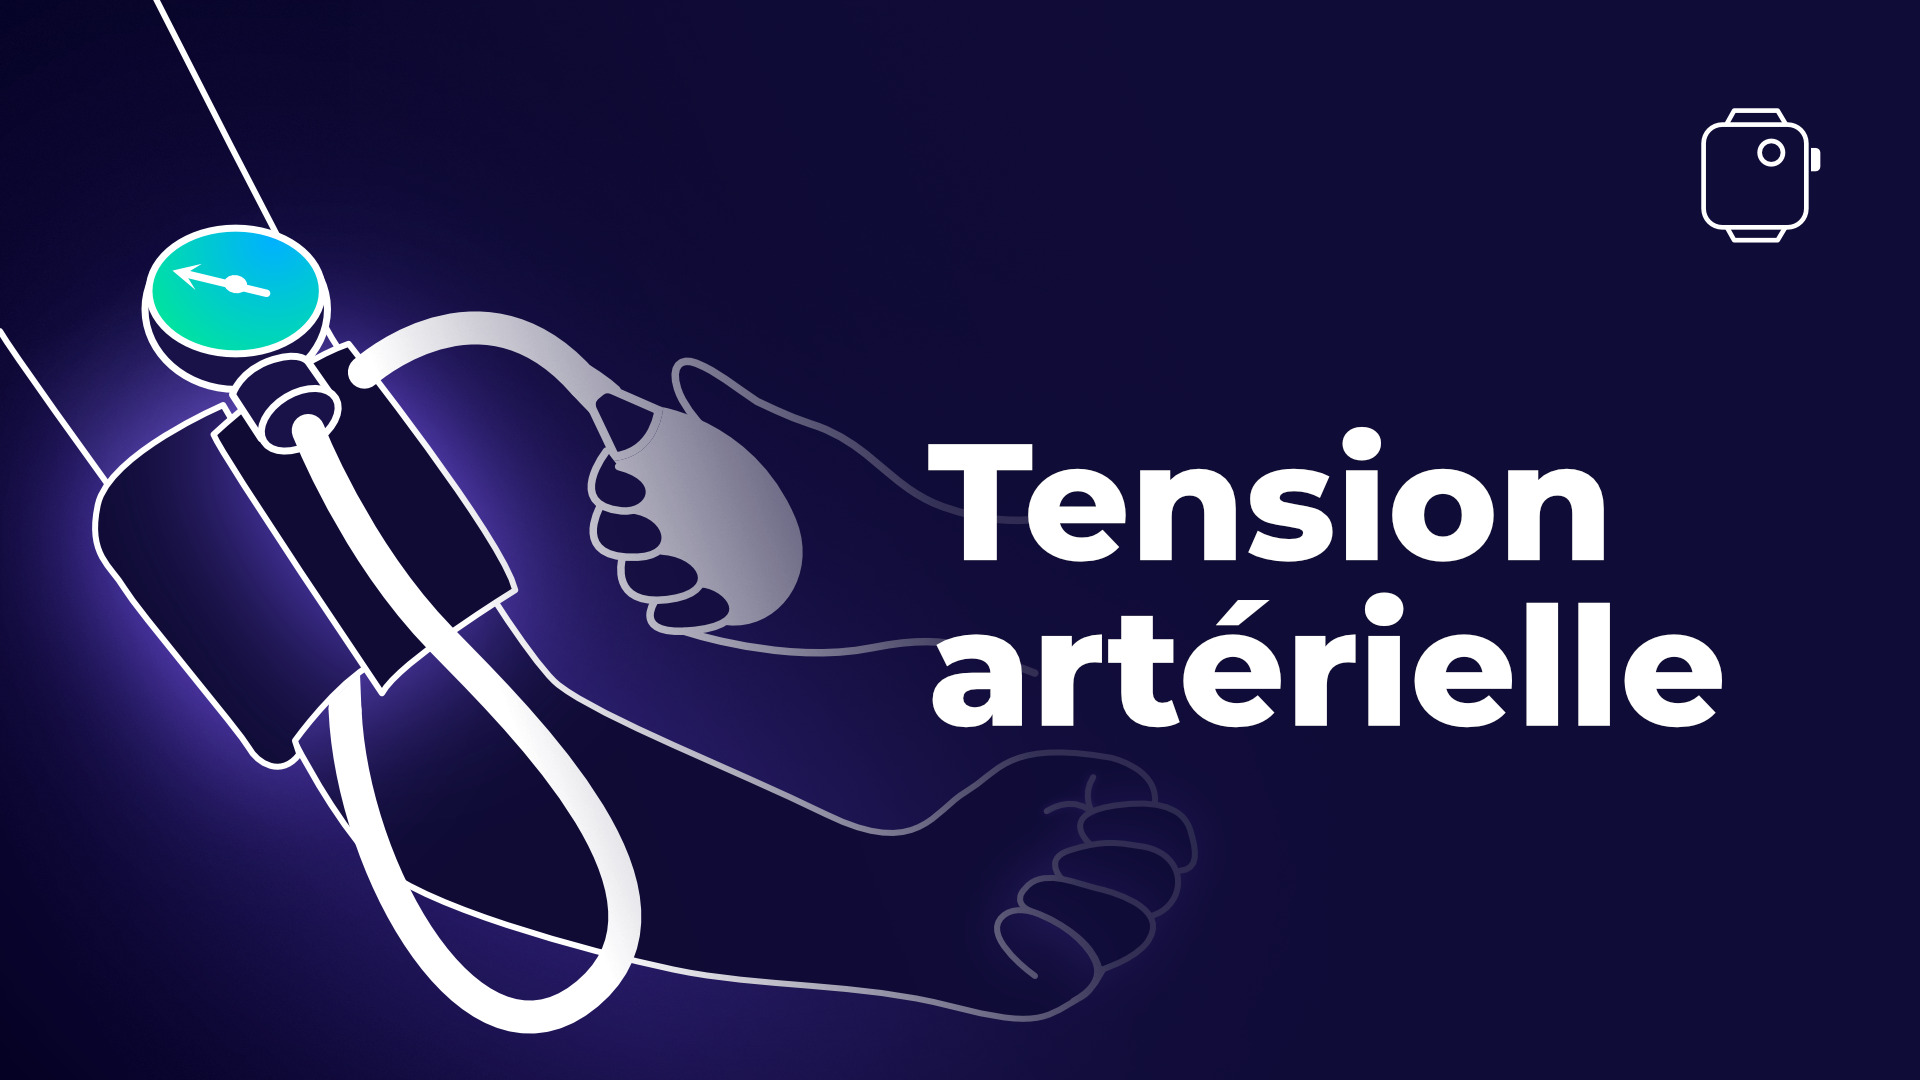 Comment mesurer sa tension artérielle? - Medi-Market Blog